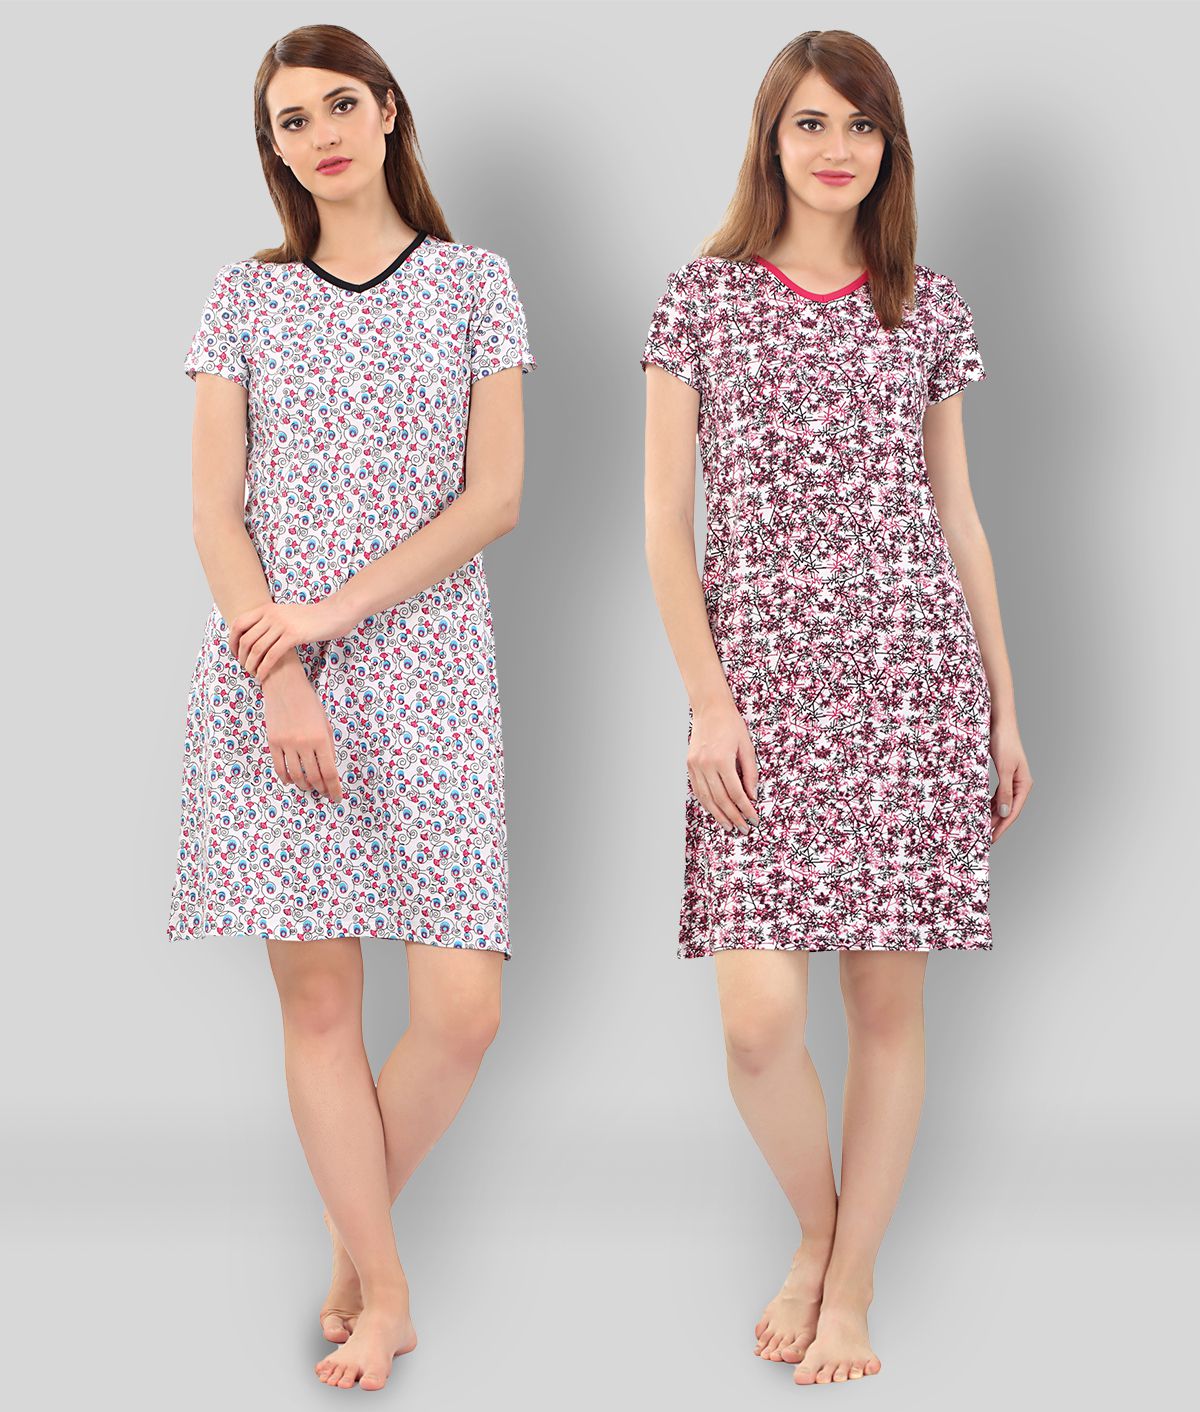 Zebu - Multicolor Cotton Women's Nightwear Night Dress ( Pack of 2 )